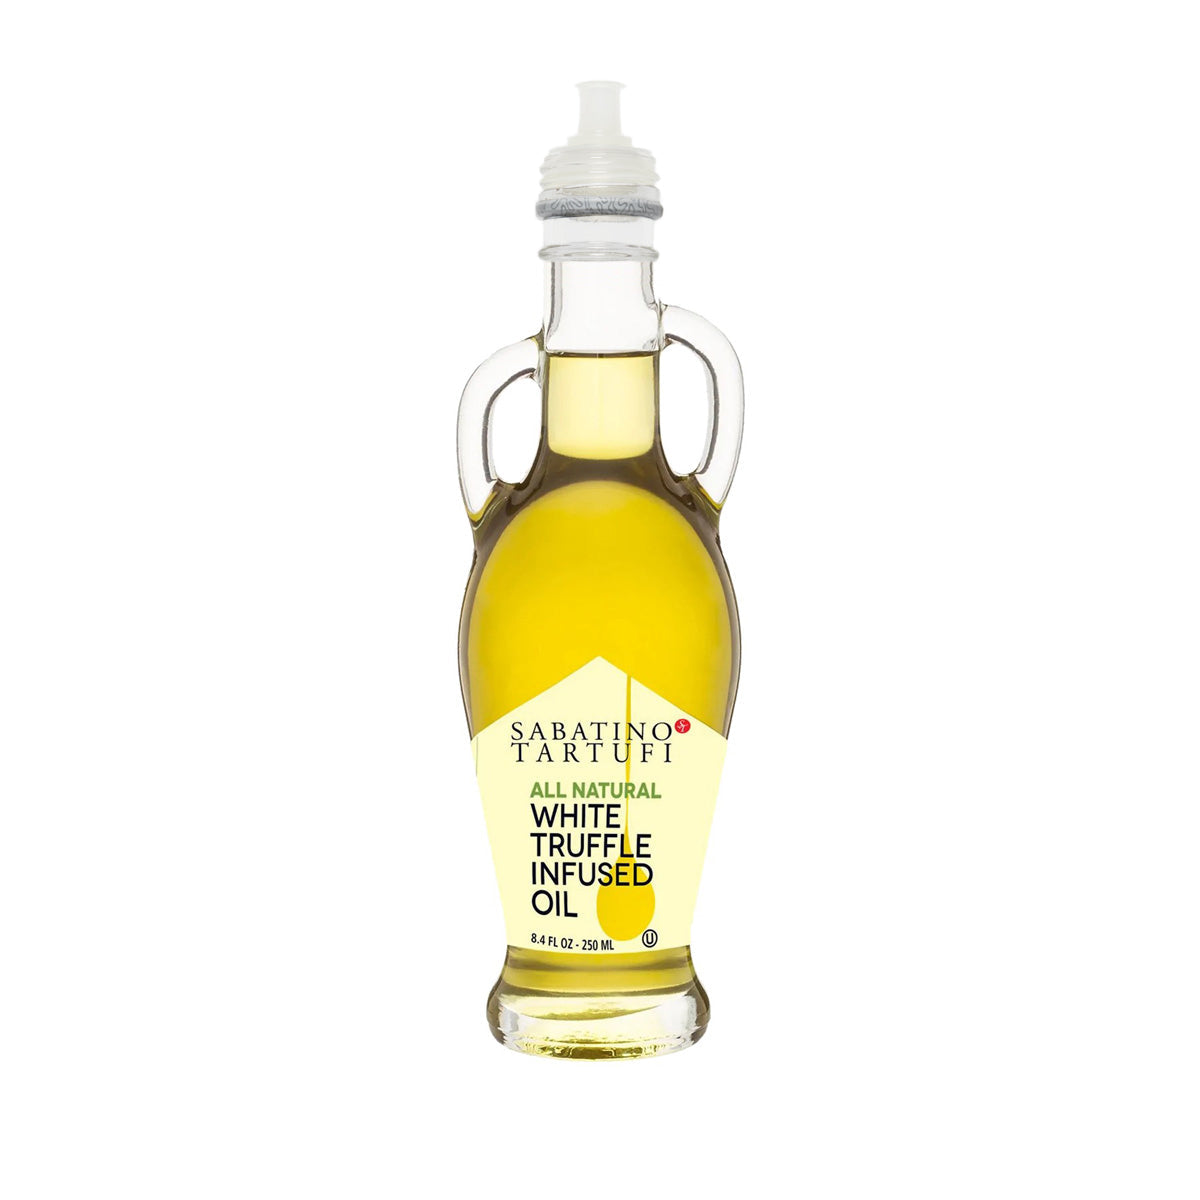 Sabatino Tartufi White Truffle Oil 8.4 OZ